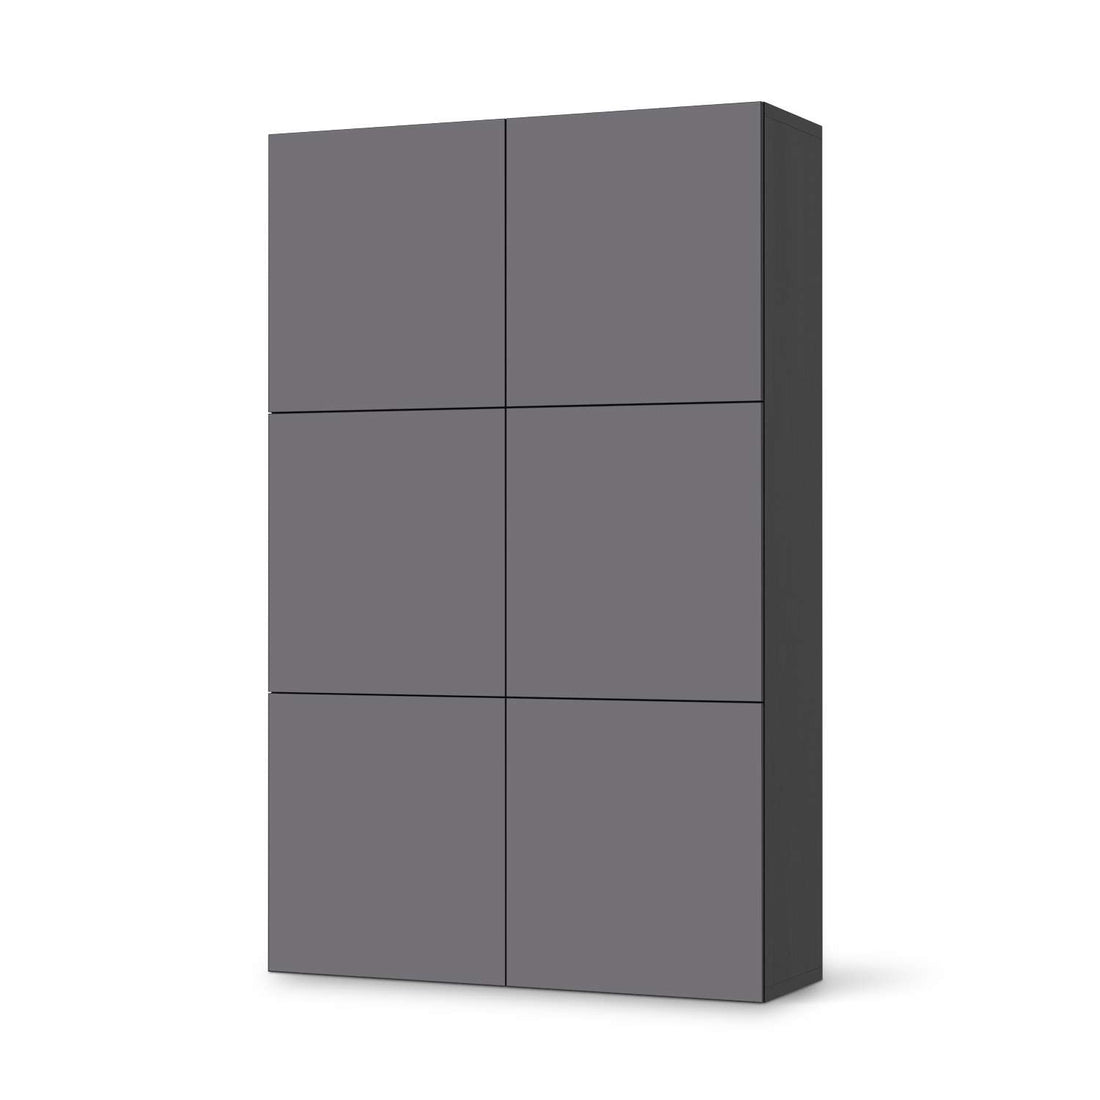 Möbel Klebefolie Grau Light - IKEA Besta Schrank Hoch 6 Türen - schwarz